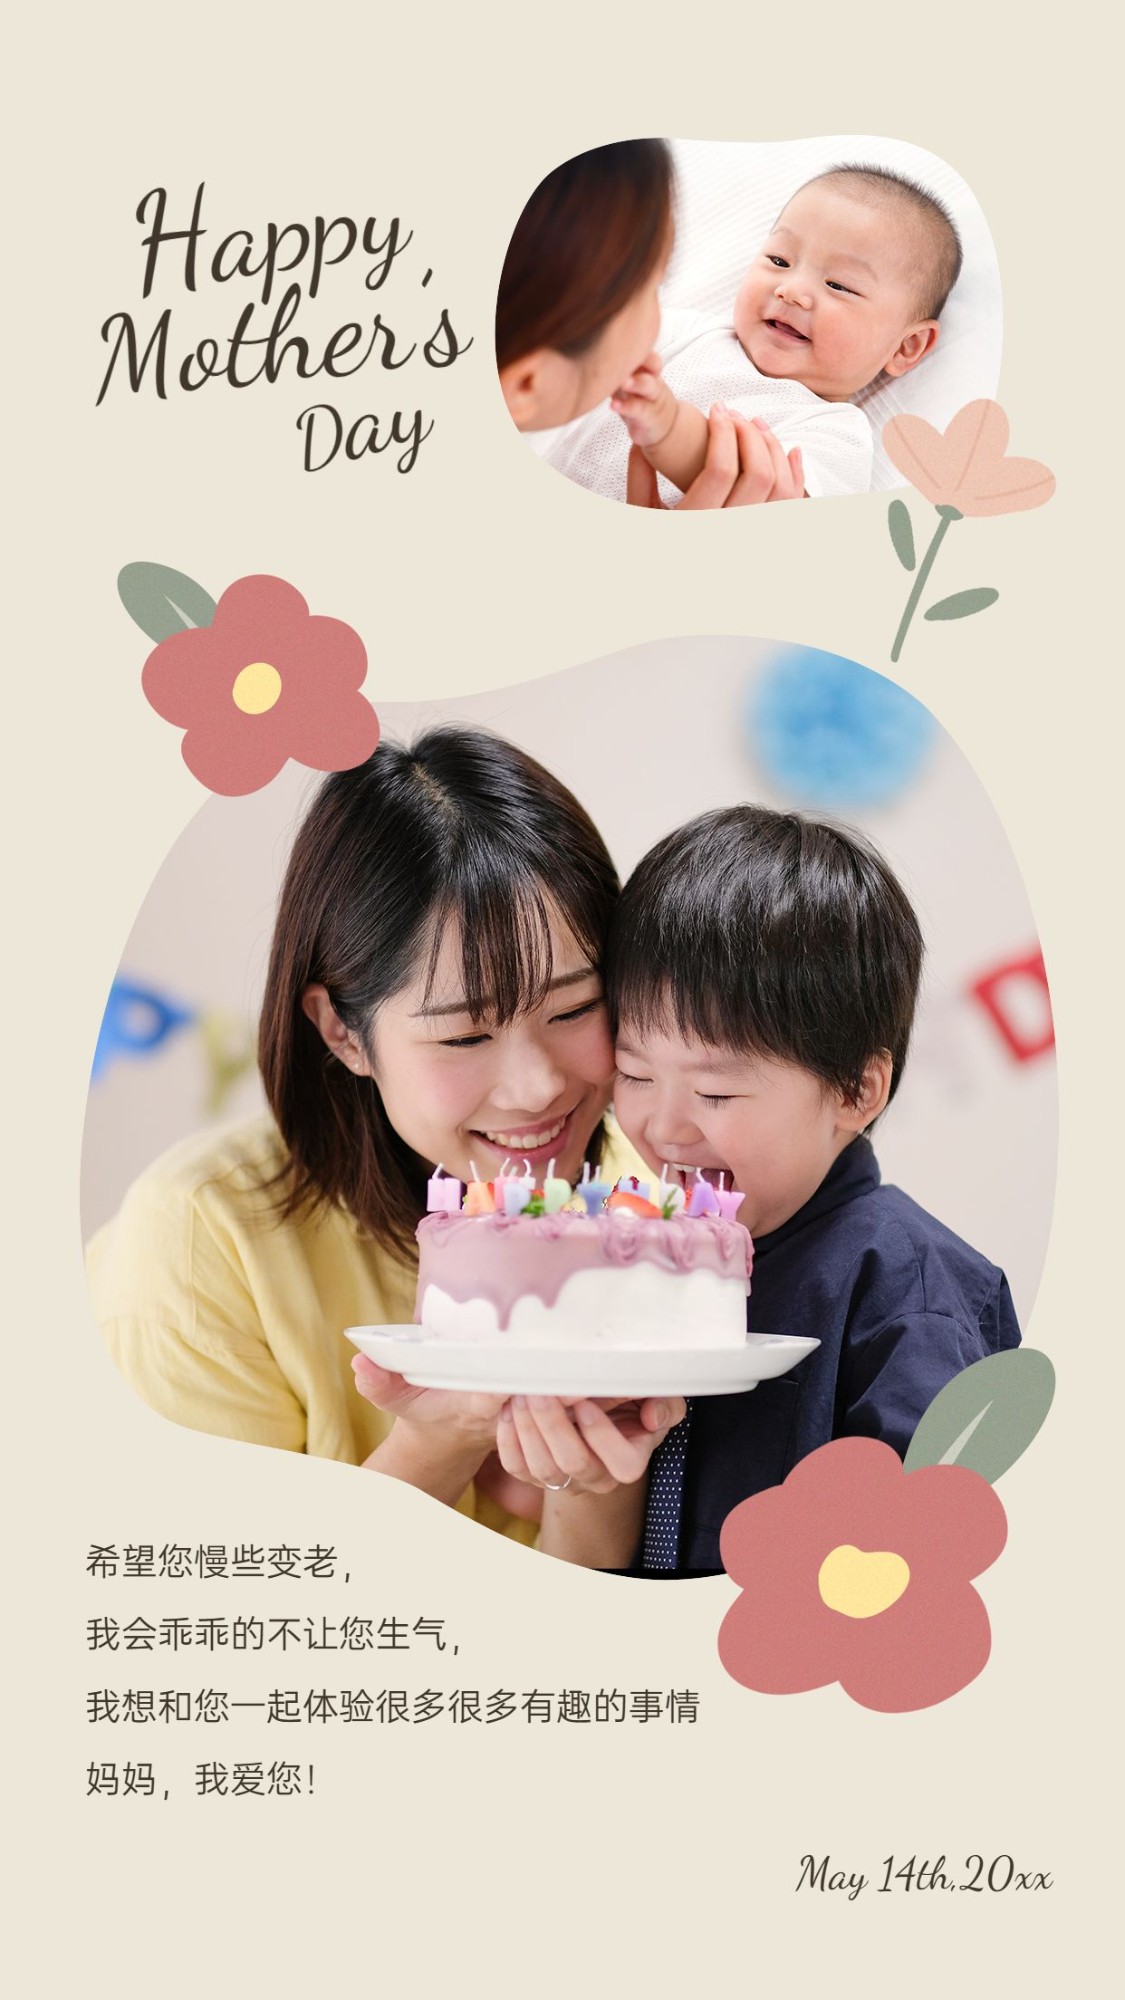 母亲节节日祝福实景竖版海报预览效果